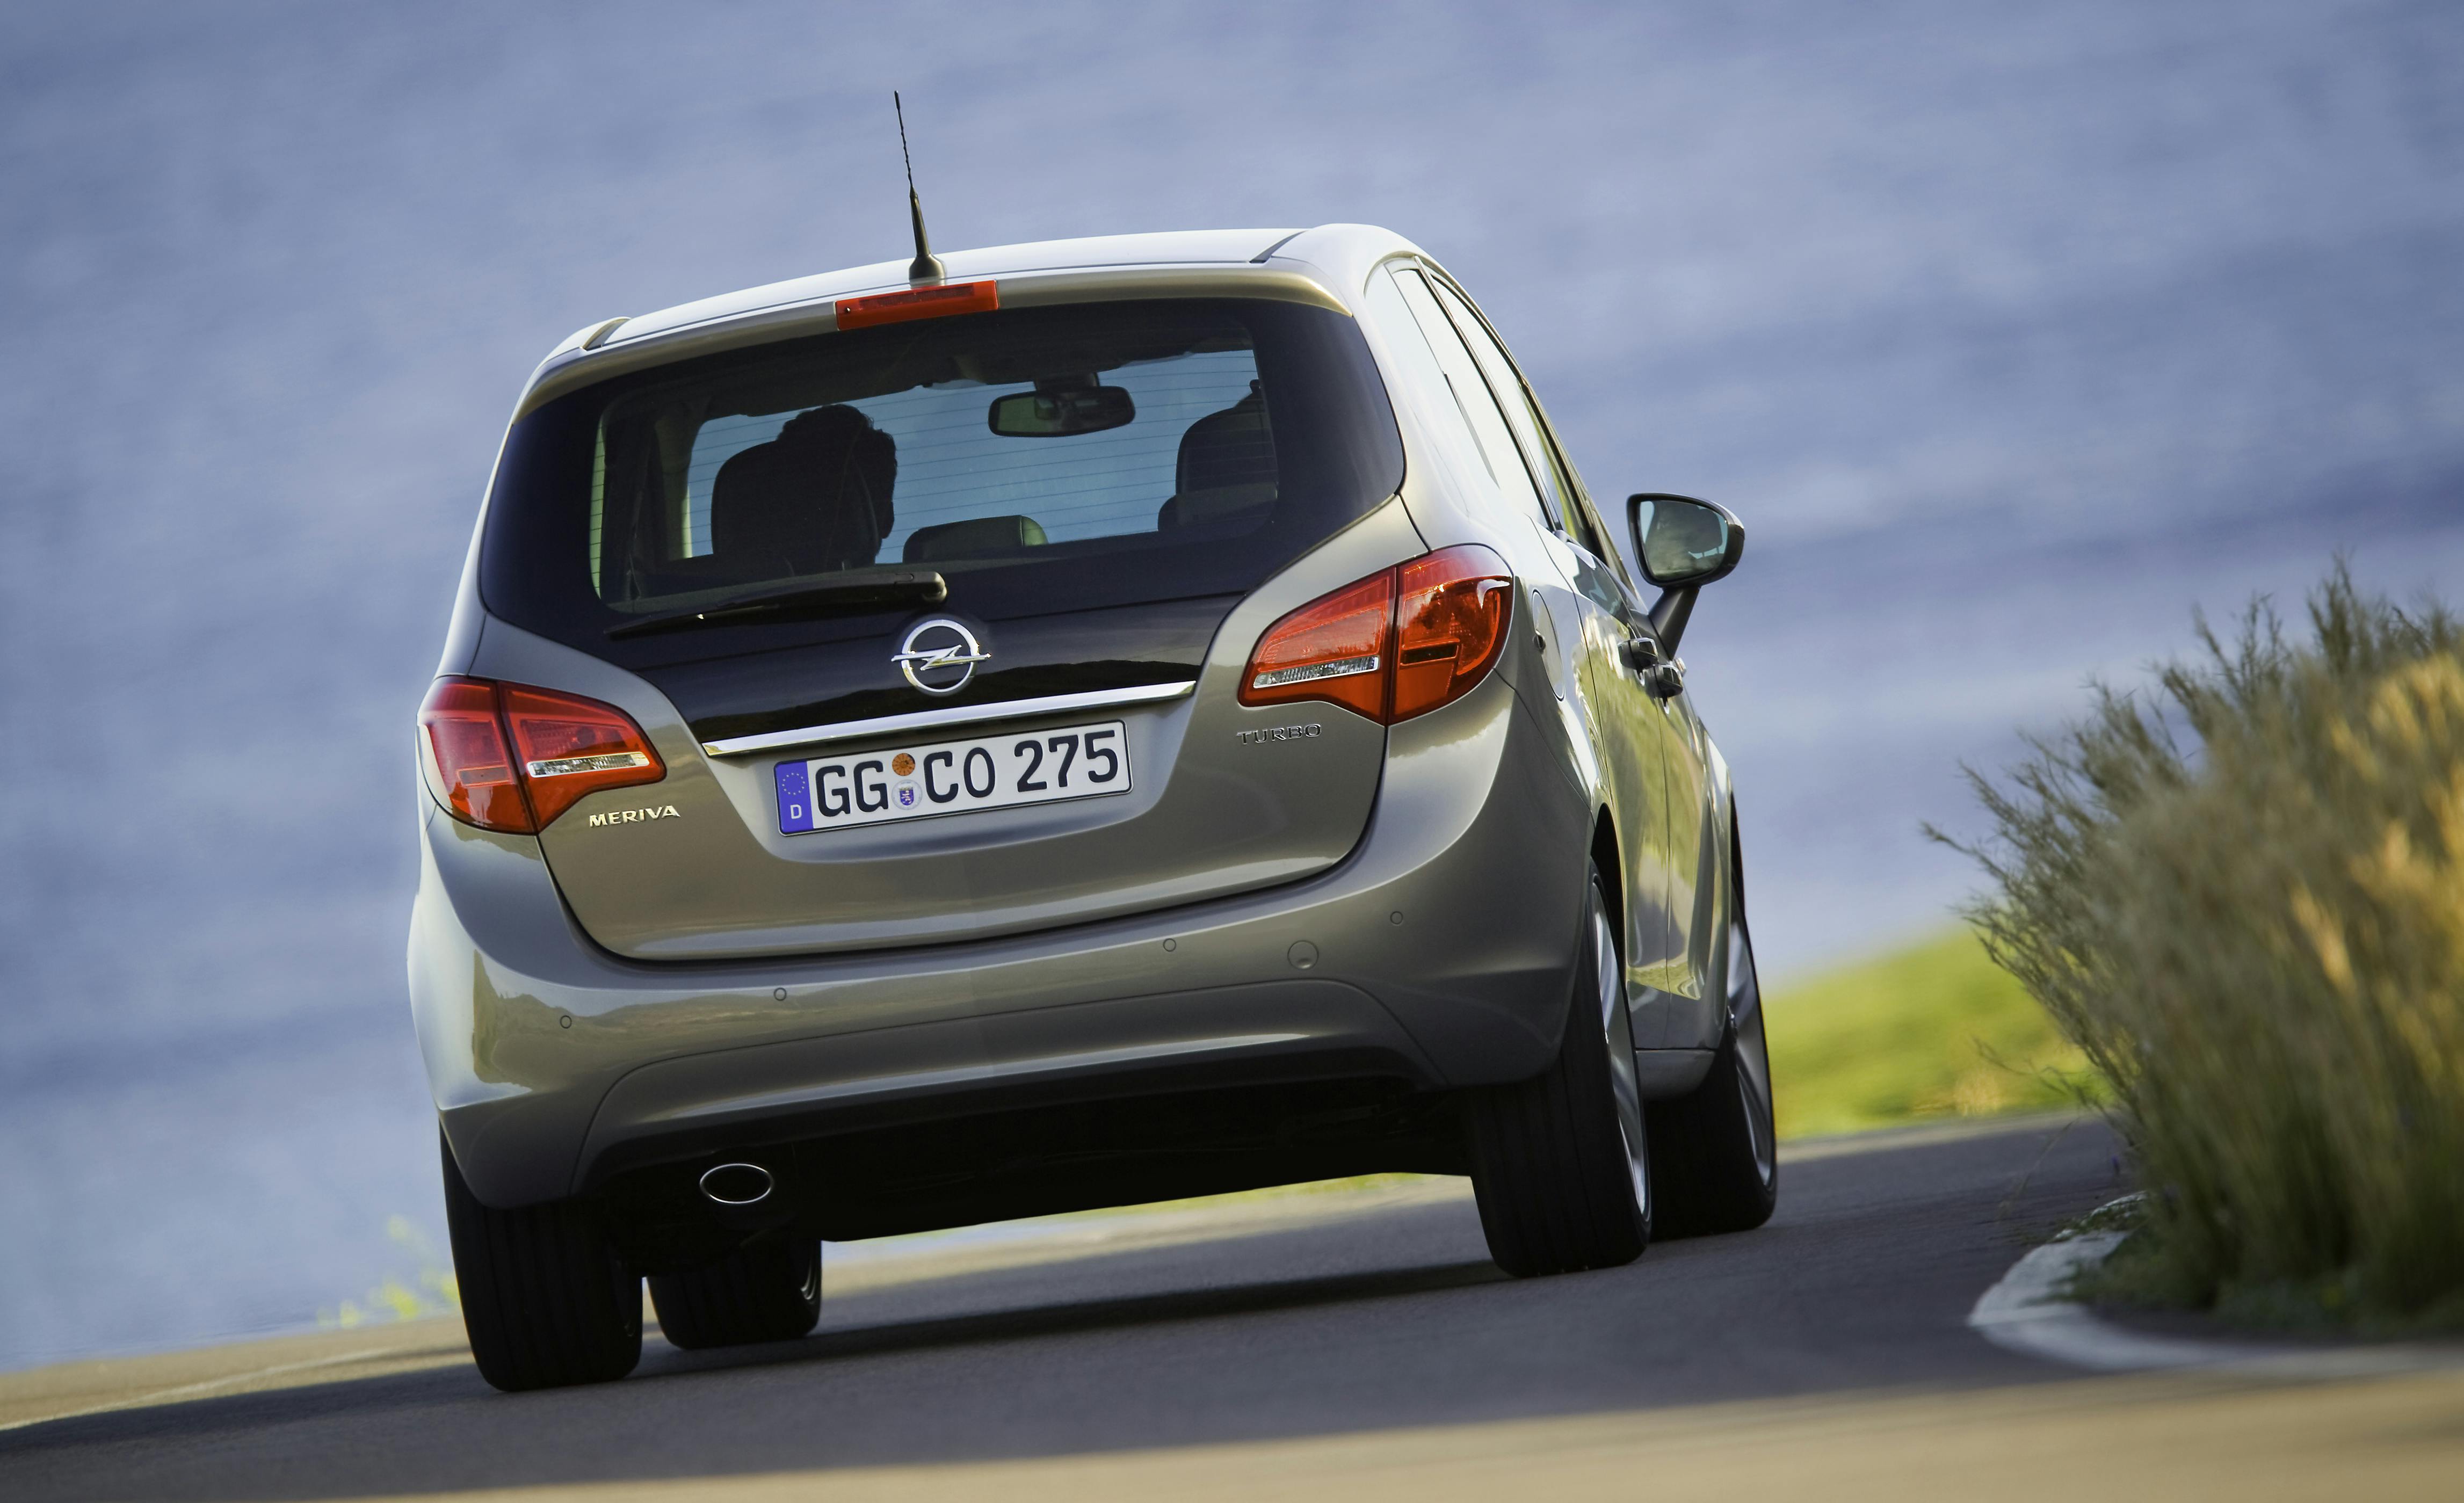 Gebrauchtwagen-Check: Opel Meriva - Variabel und verlässlich - FOCUS online